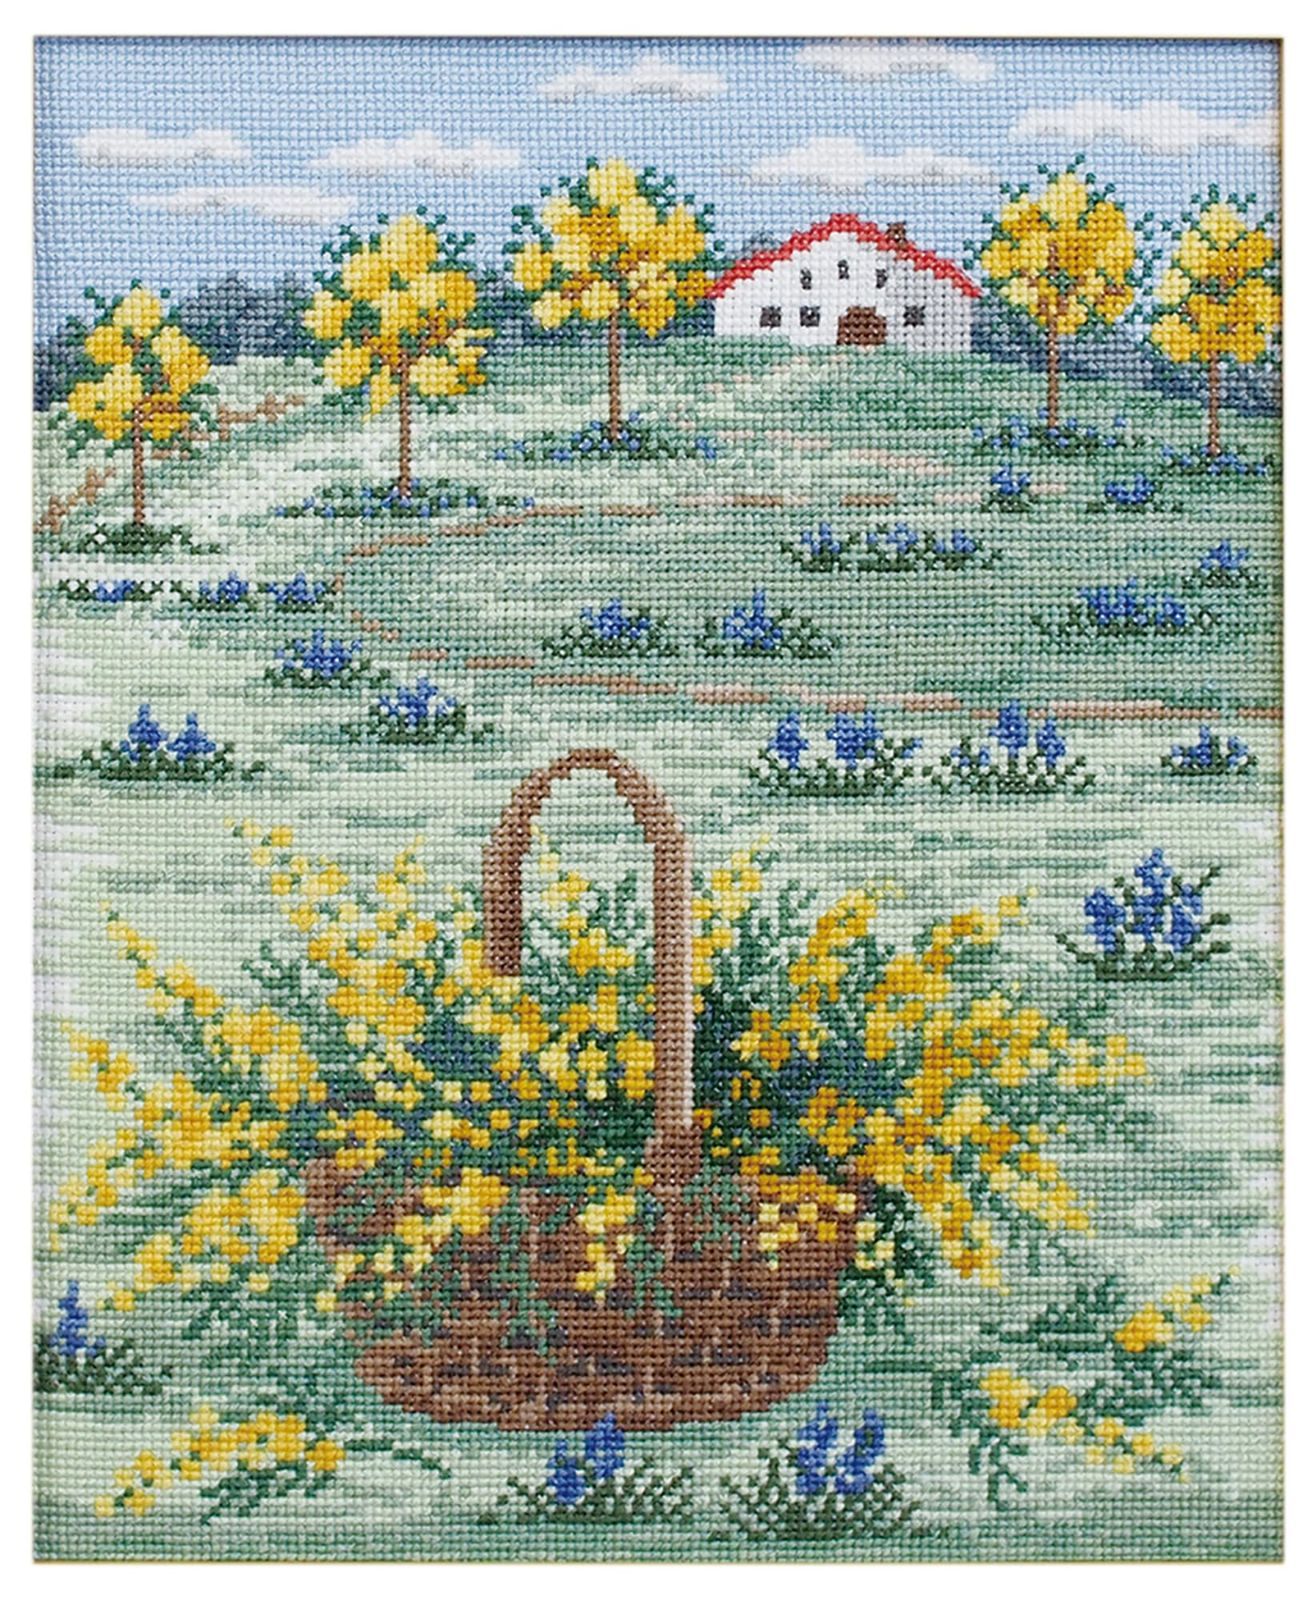 オリムパス製絲(Olympus Thread) オリムパス 刺しゅうキット クロスステッチ オノエ・メグミ ヨーロッパの風景 ~四季を巡る旅~ 「  ミモザ色のフランス早春の丘 」 7576 ※額(フレーム)W-41は別売りです。 - メルカリ